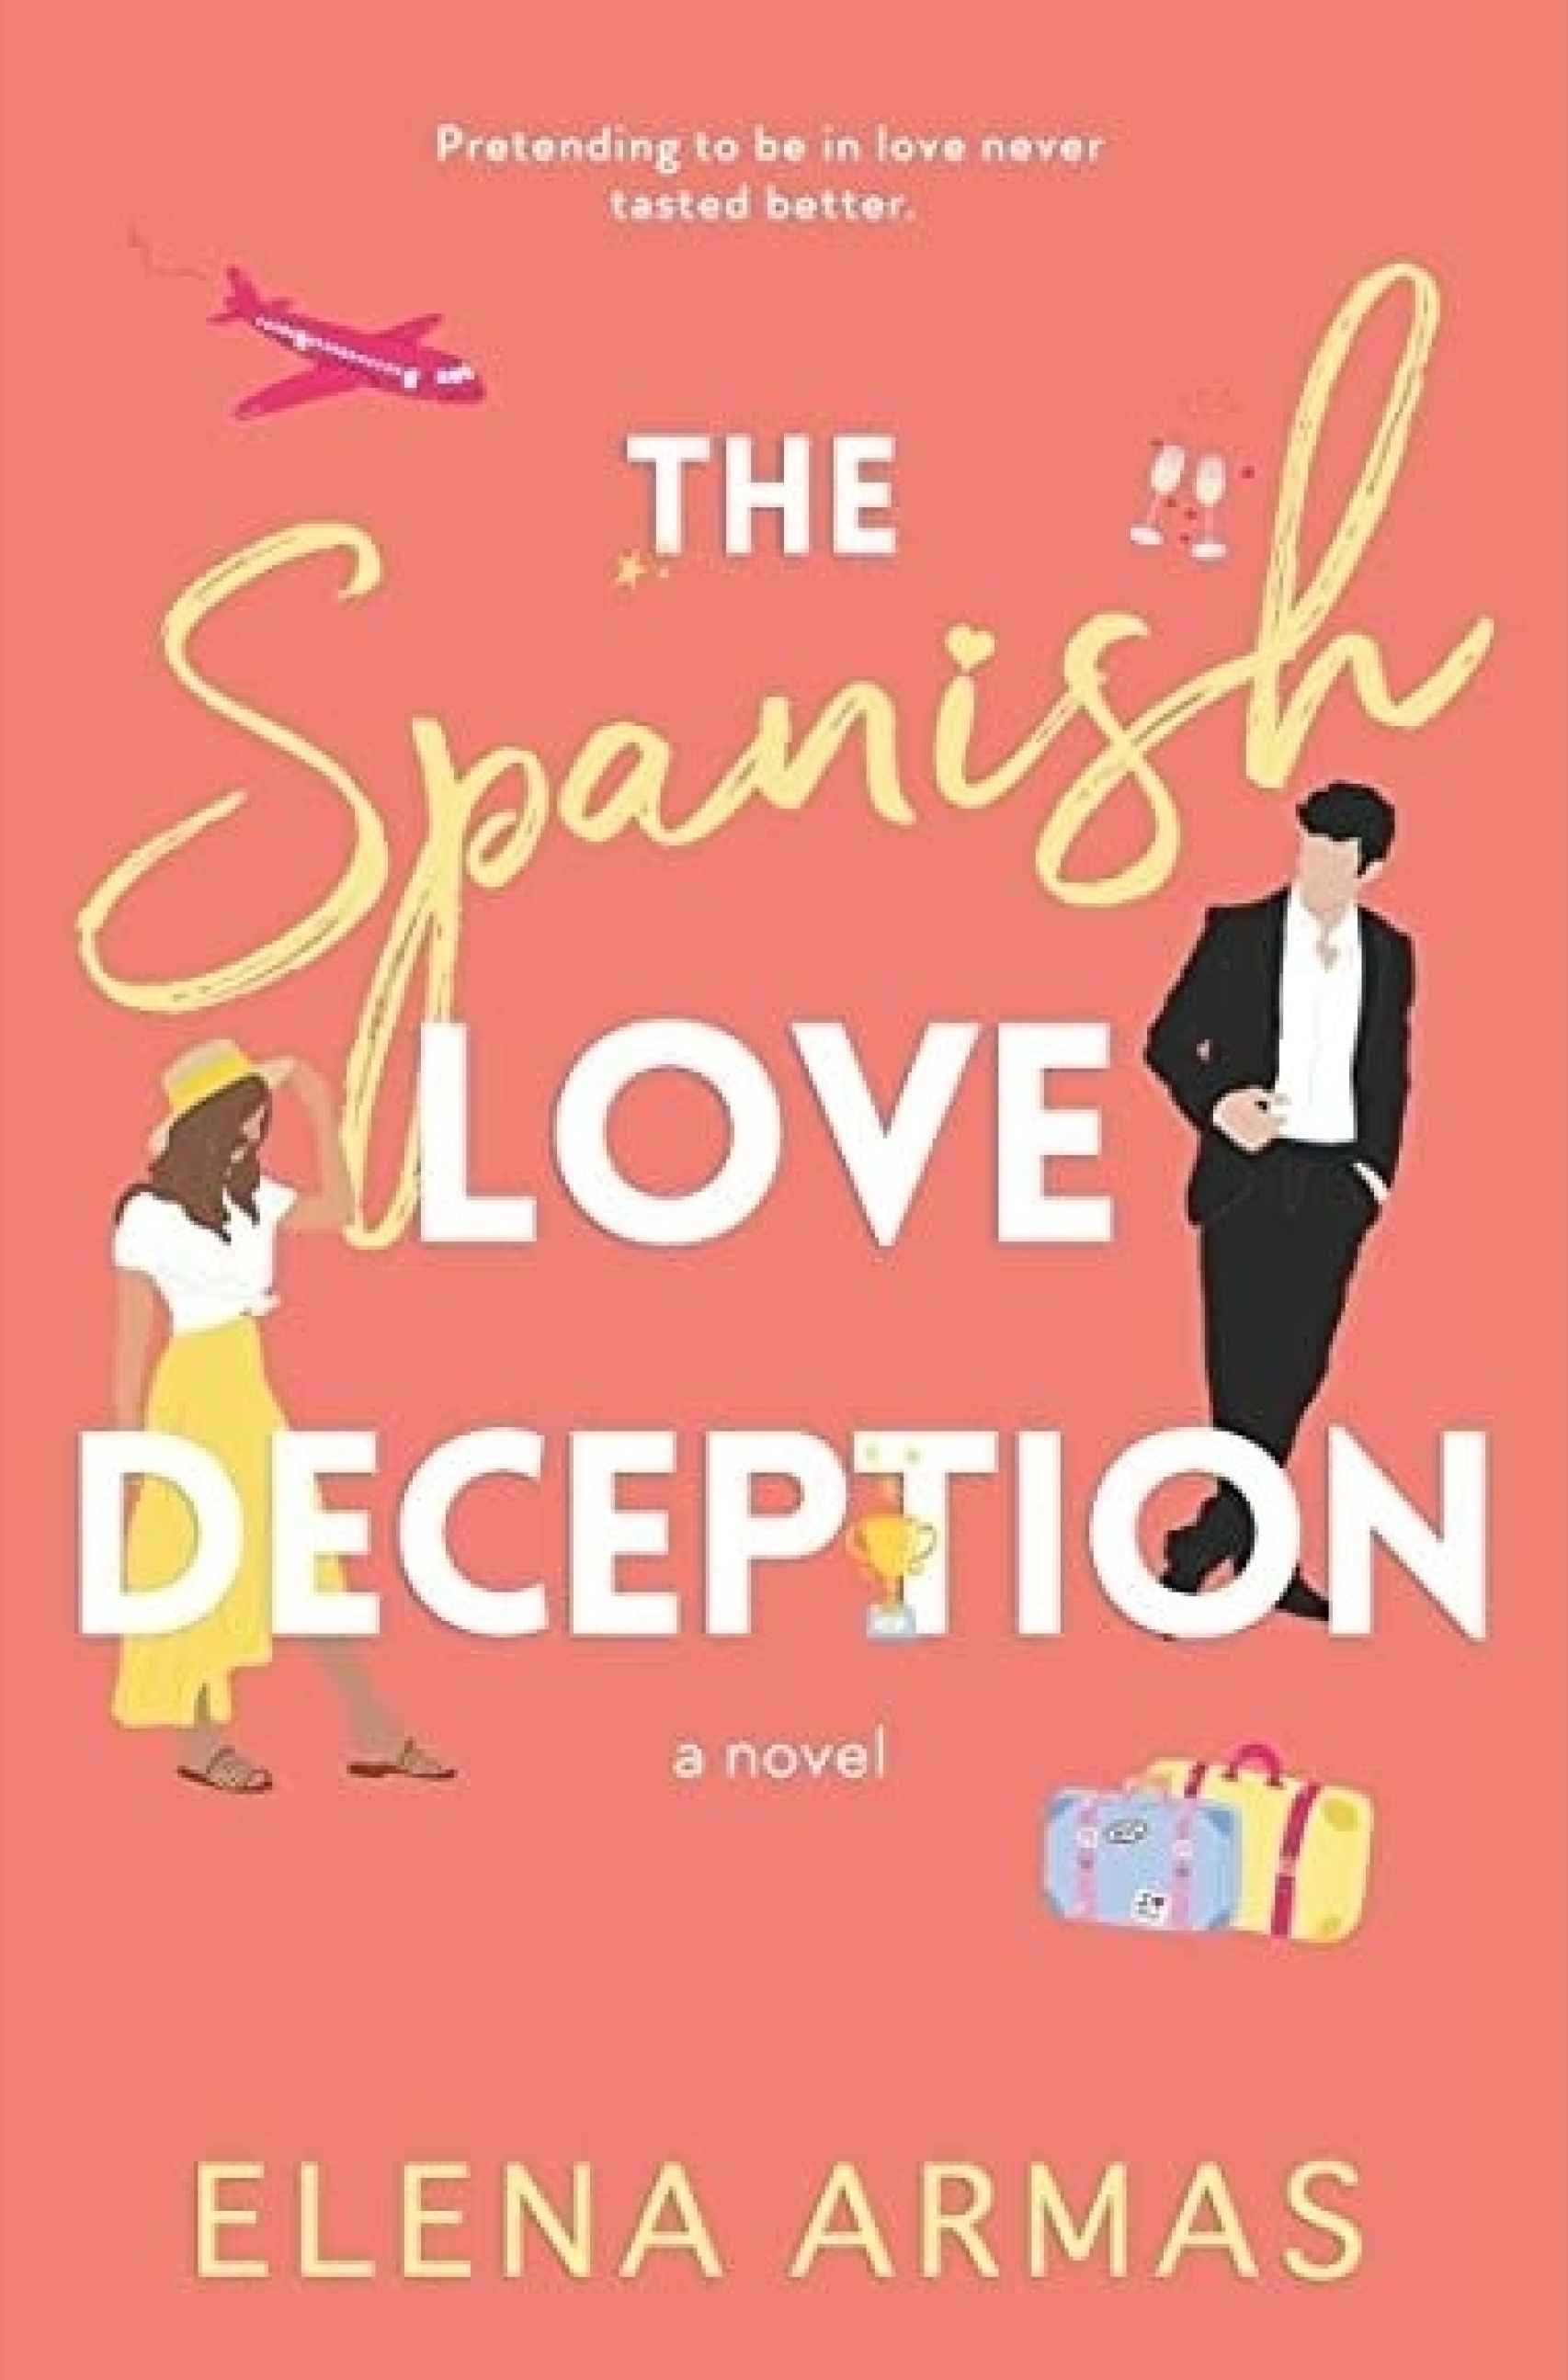 Portada de 'The Spanish Love Deception', la edición en inglés